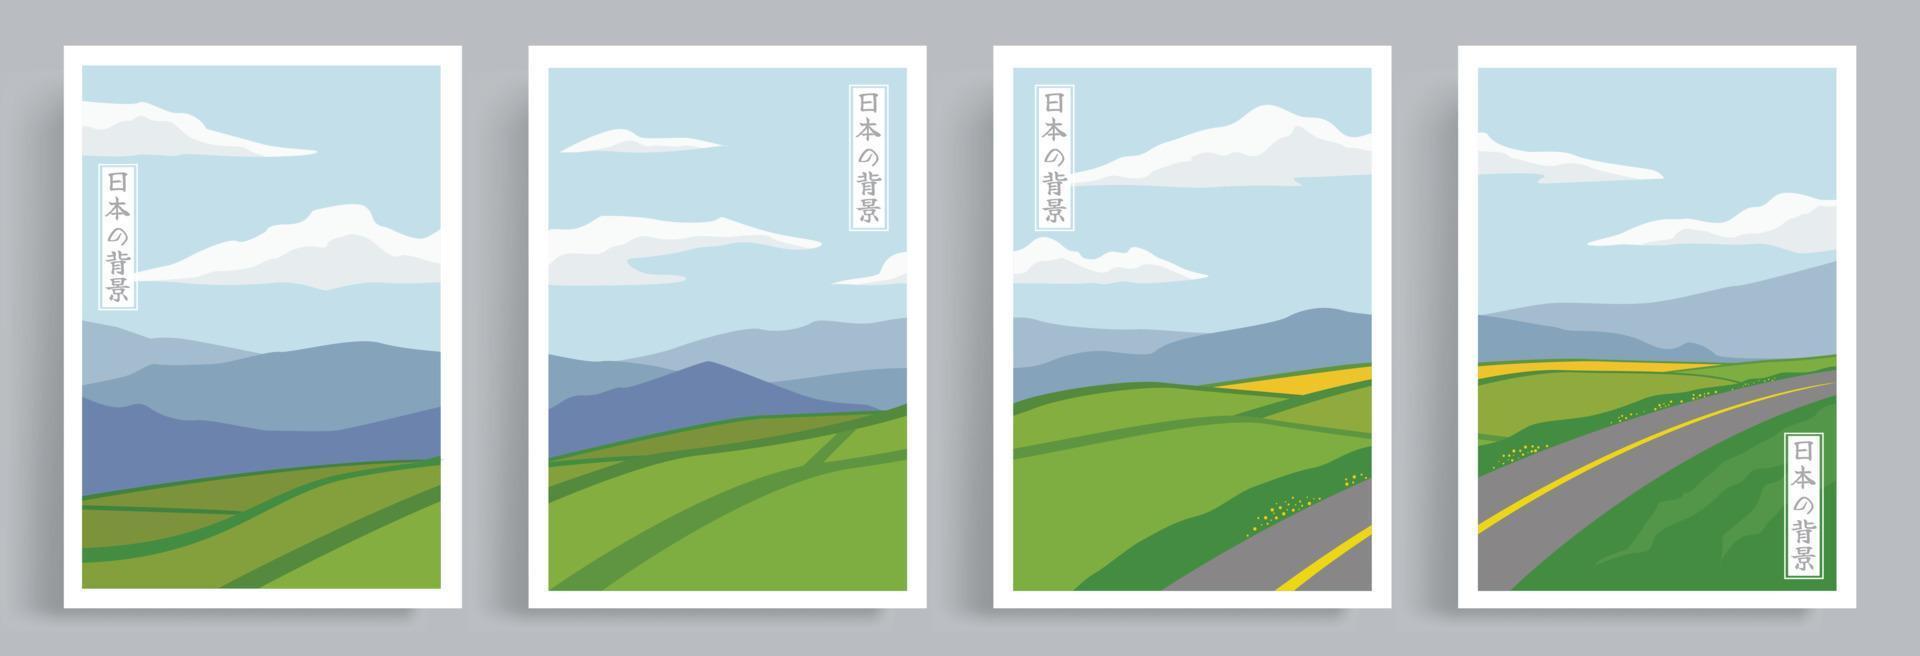 4 séries d'illustrations de style oriental japonais. vecteur de rizières en terrasses avec fond de belles montagnes. convient pour l'impression sur toile, l'affiche, la décoration intérieure, la couverture de livre, le papier peint.